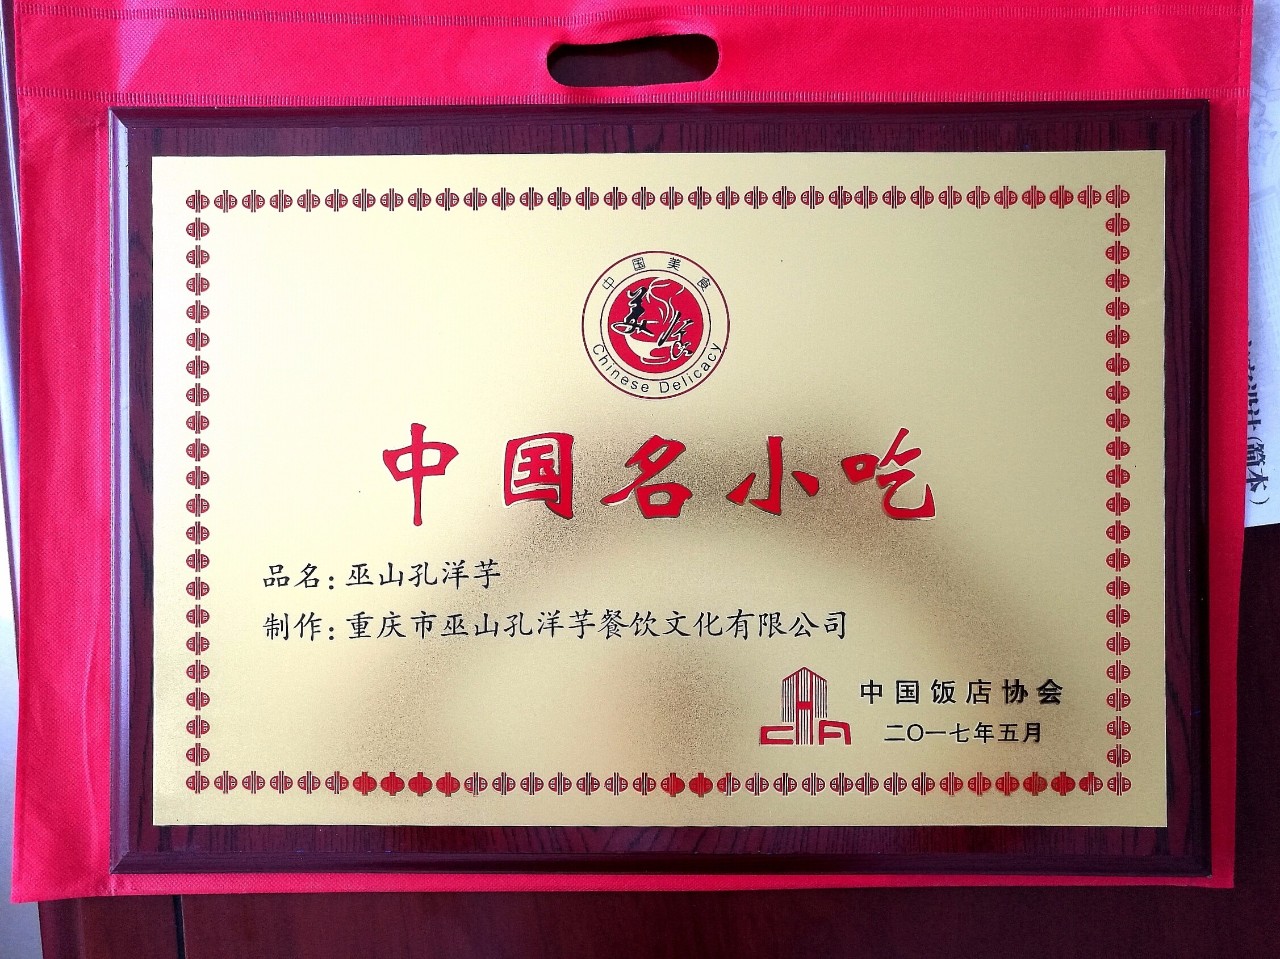 参加重庆的中国饭店节,获得【中国名小吃】称号如何使用核销码:https